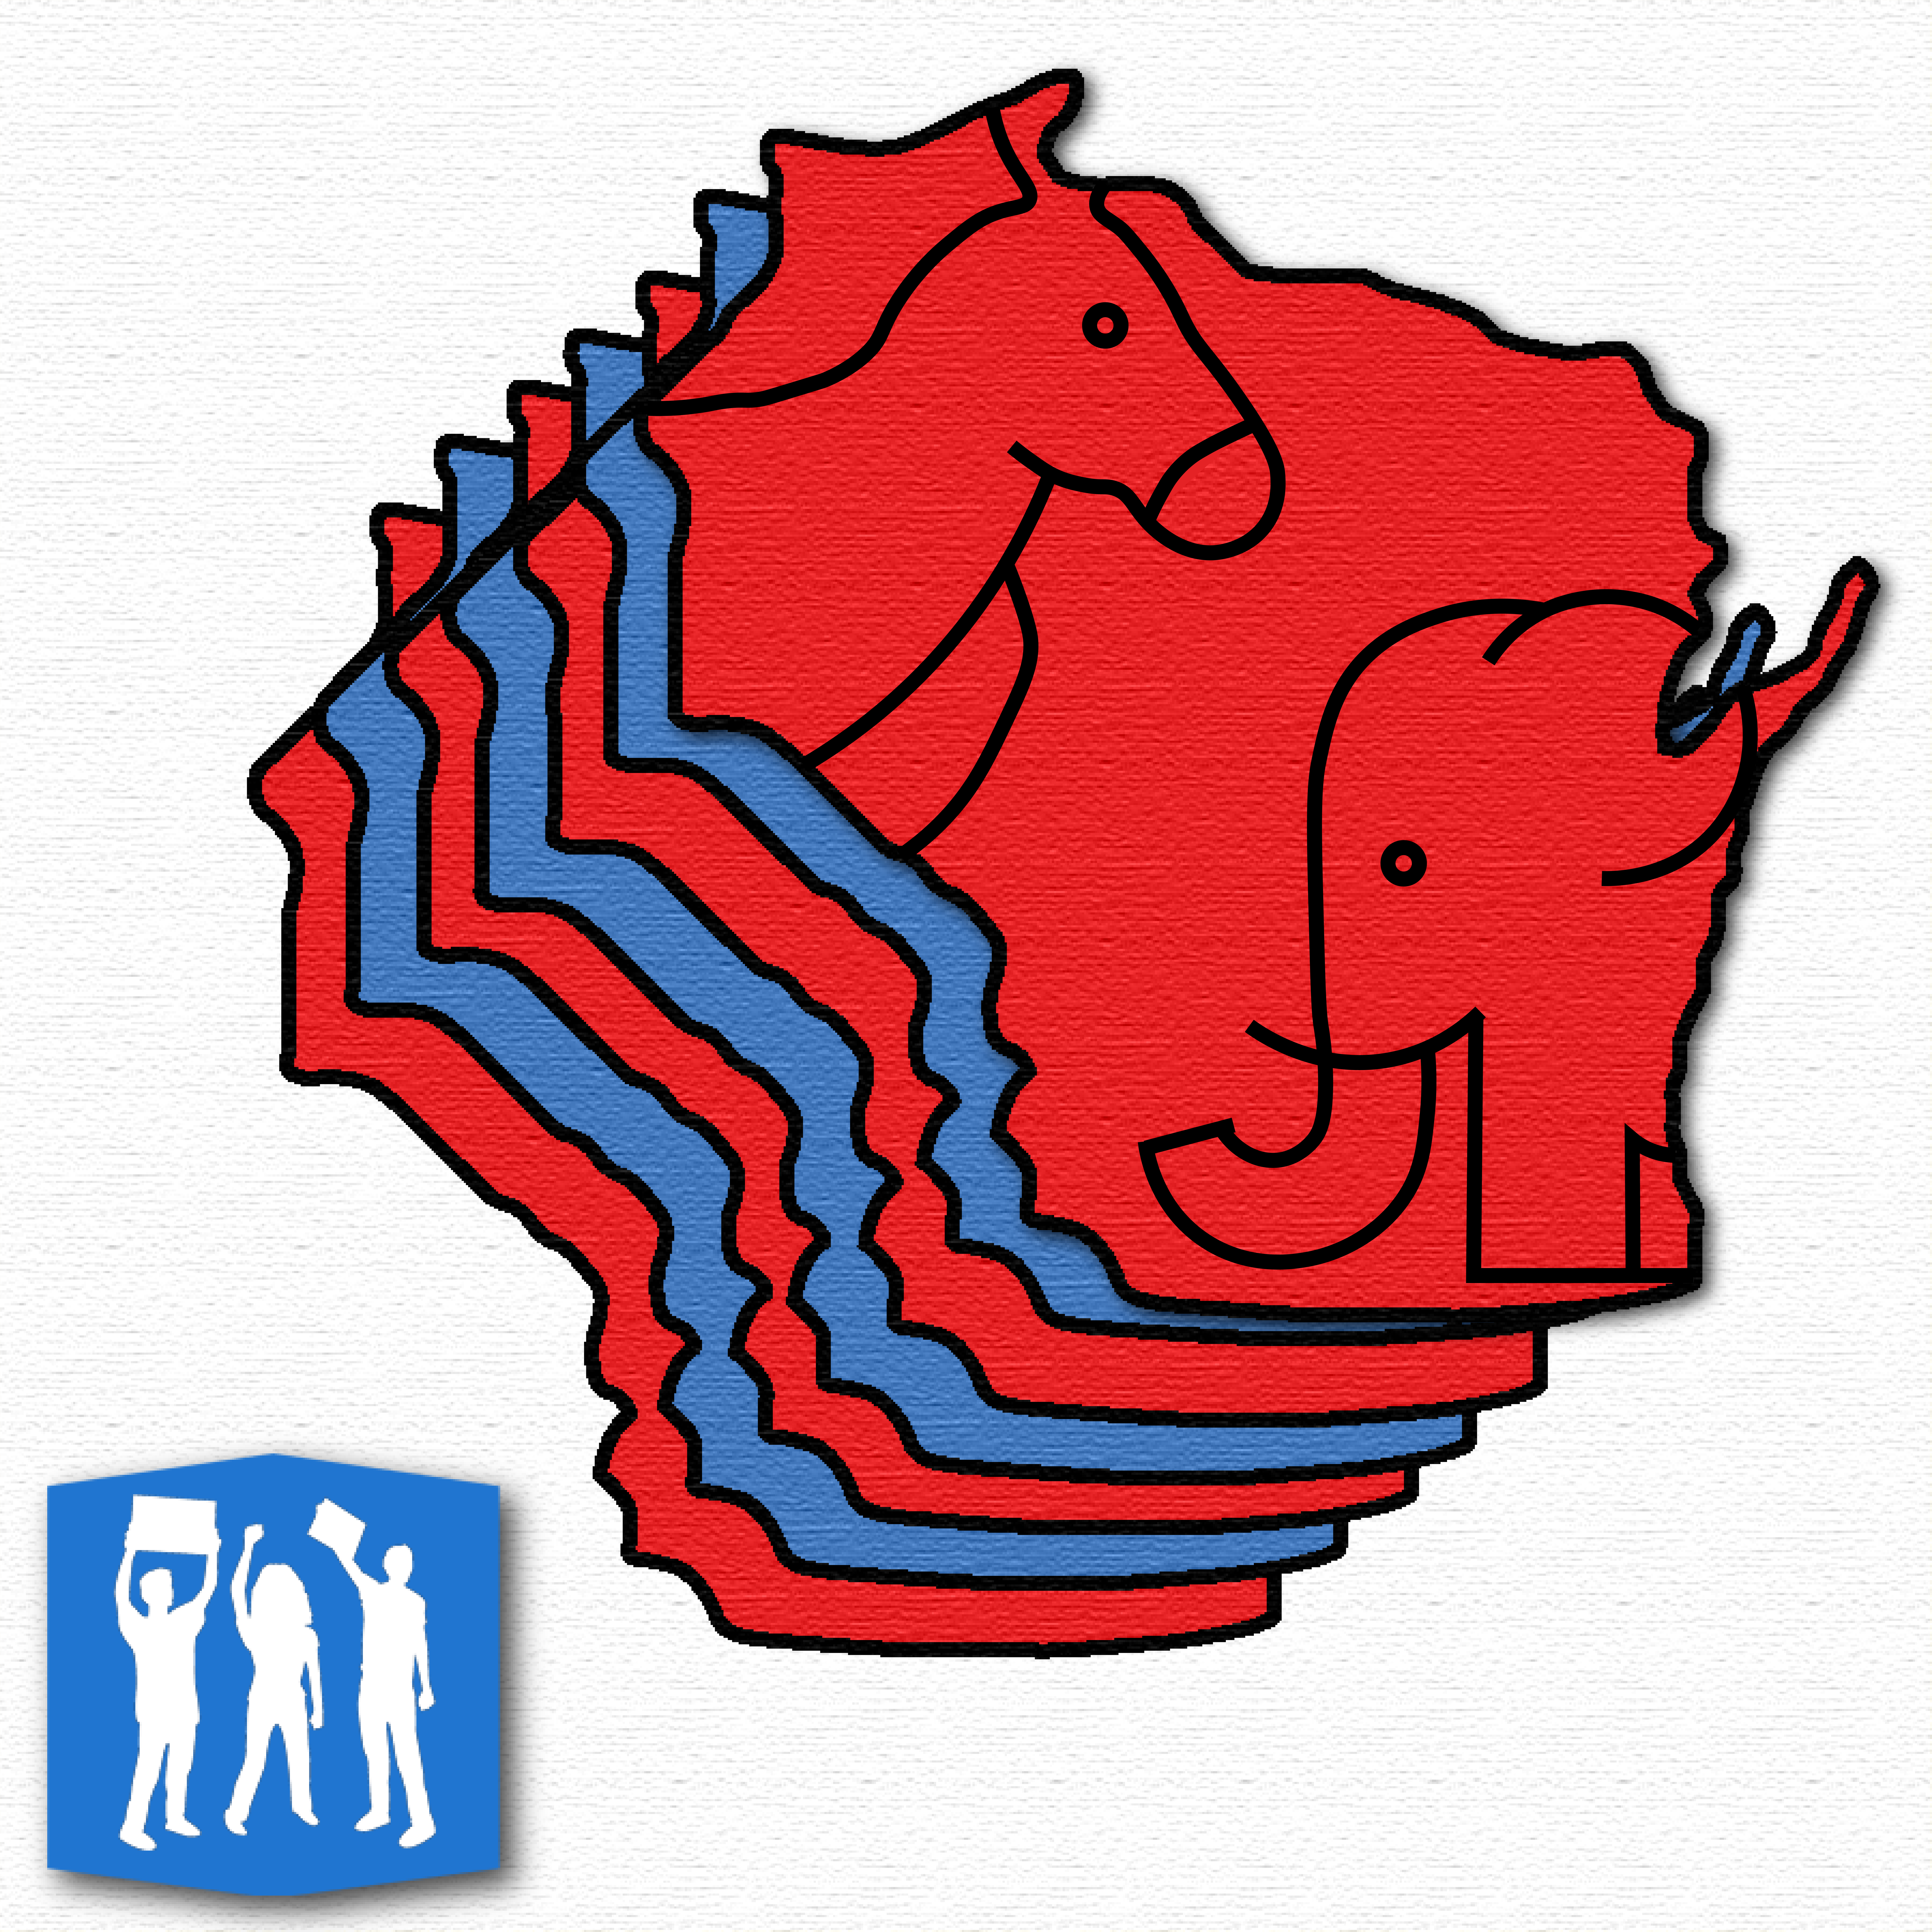 Podcast: Republicans, Democrats debate Nov. 8 elections